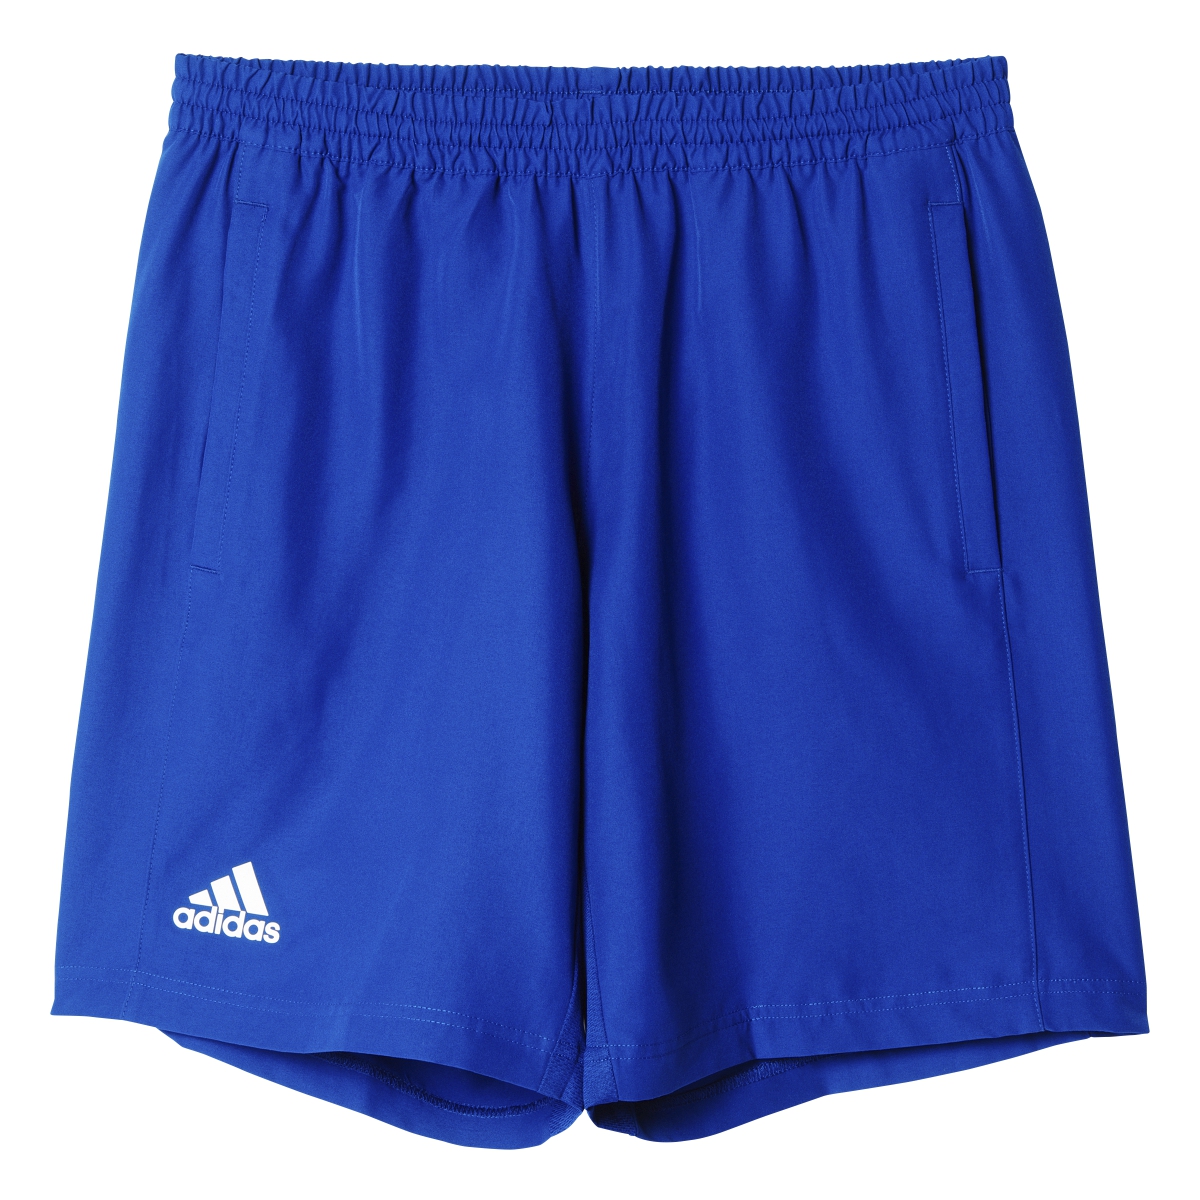 Adidas Men's T16 CC Team Tennis Shorts (Blue/White)